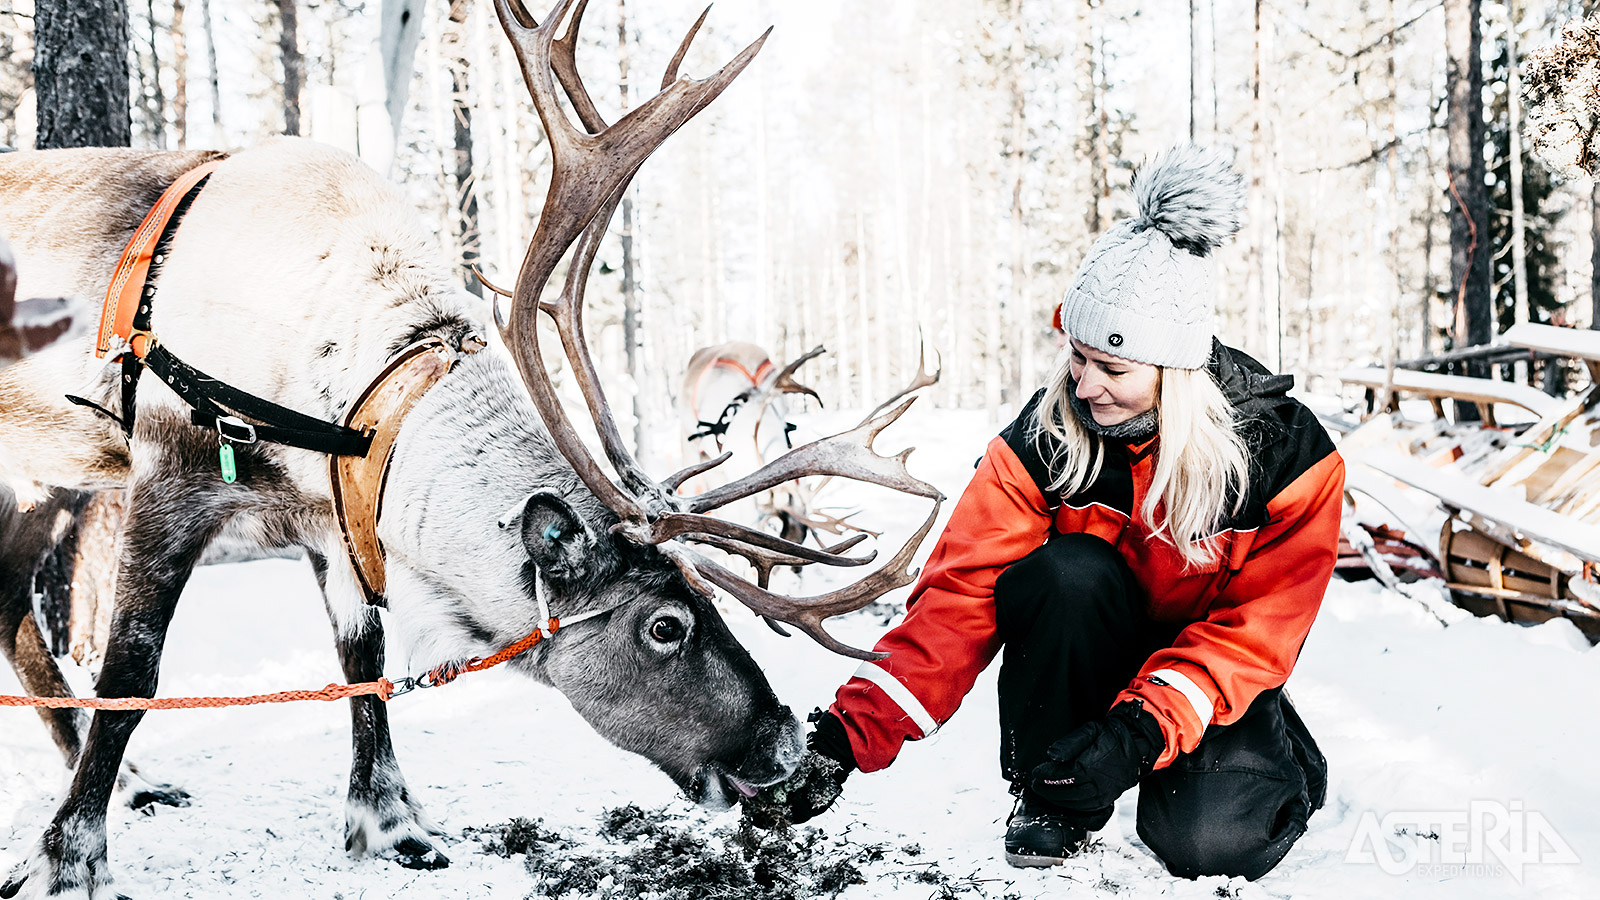 Rendieren spelen een belangrijke rol in de traditionele Sámi-cultuur en hun manier van leven